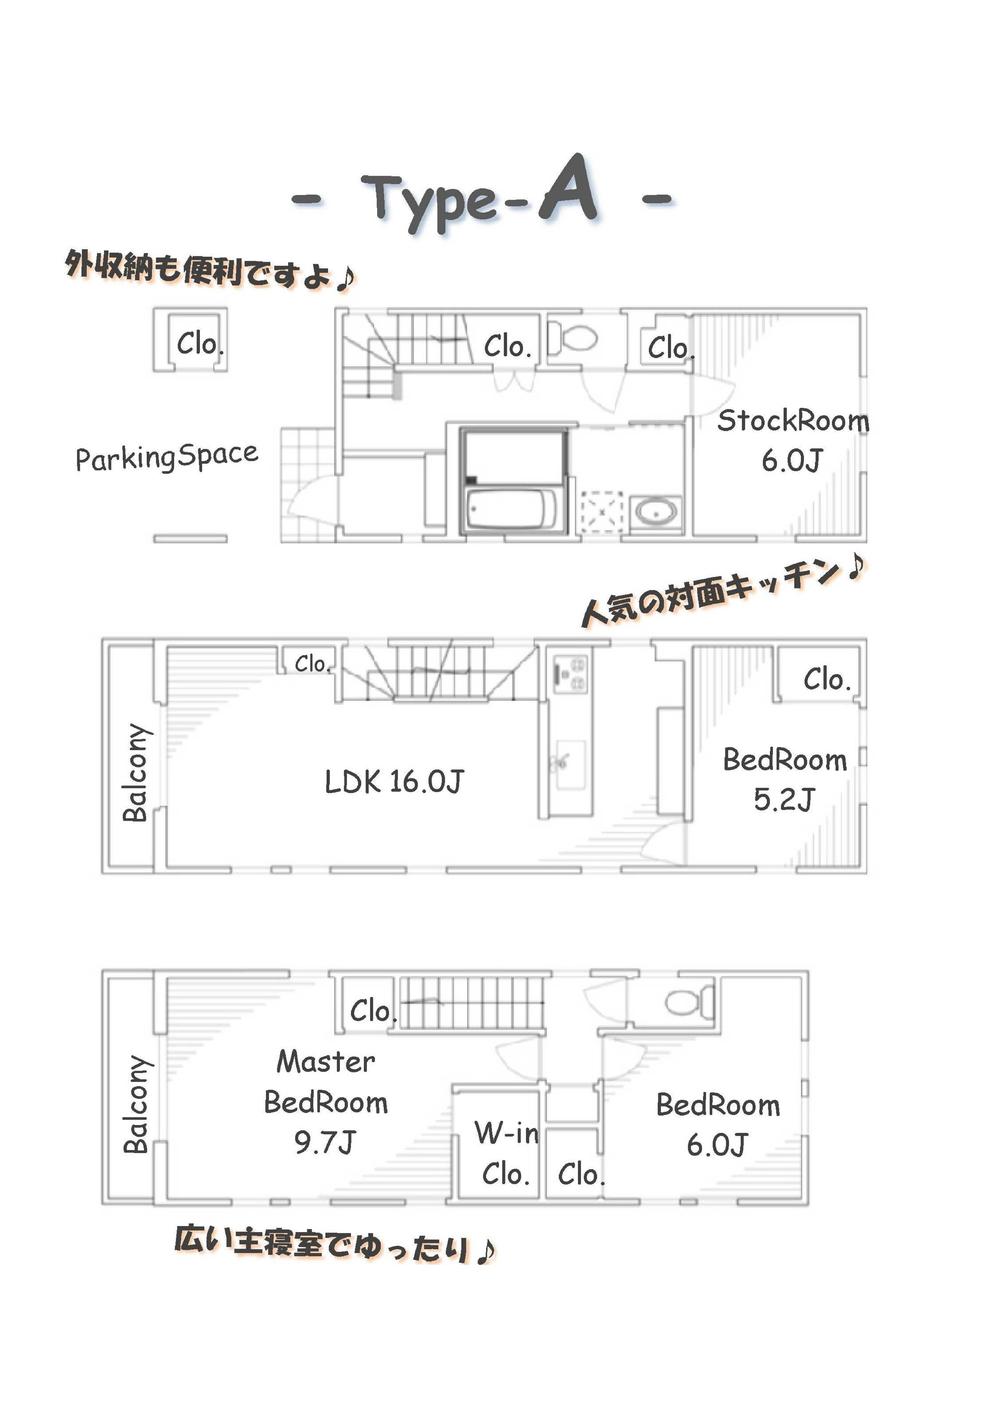 Floor plan. (A Building), Price 45,800,000 yen, 3LDK+S, Land area 76.24 sq m , Building area 115.91 sq m